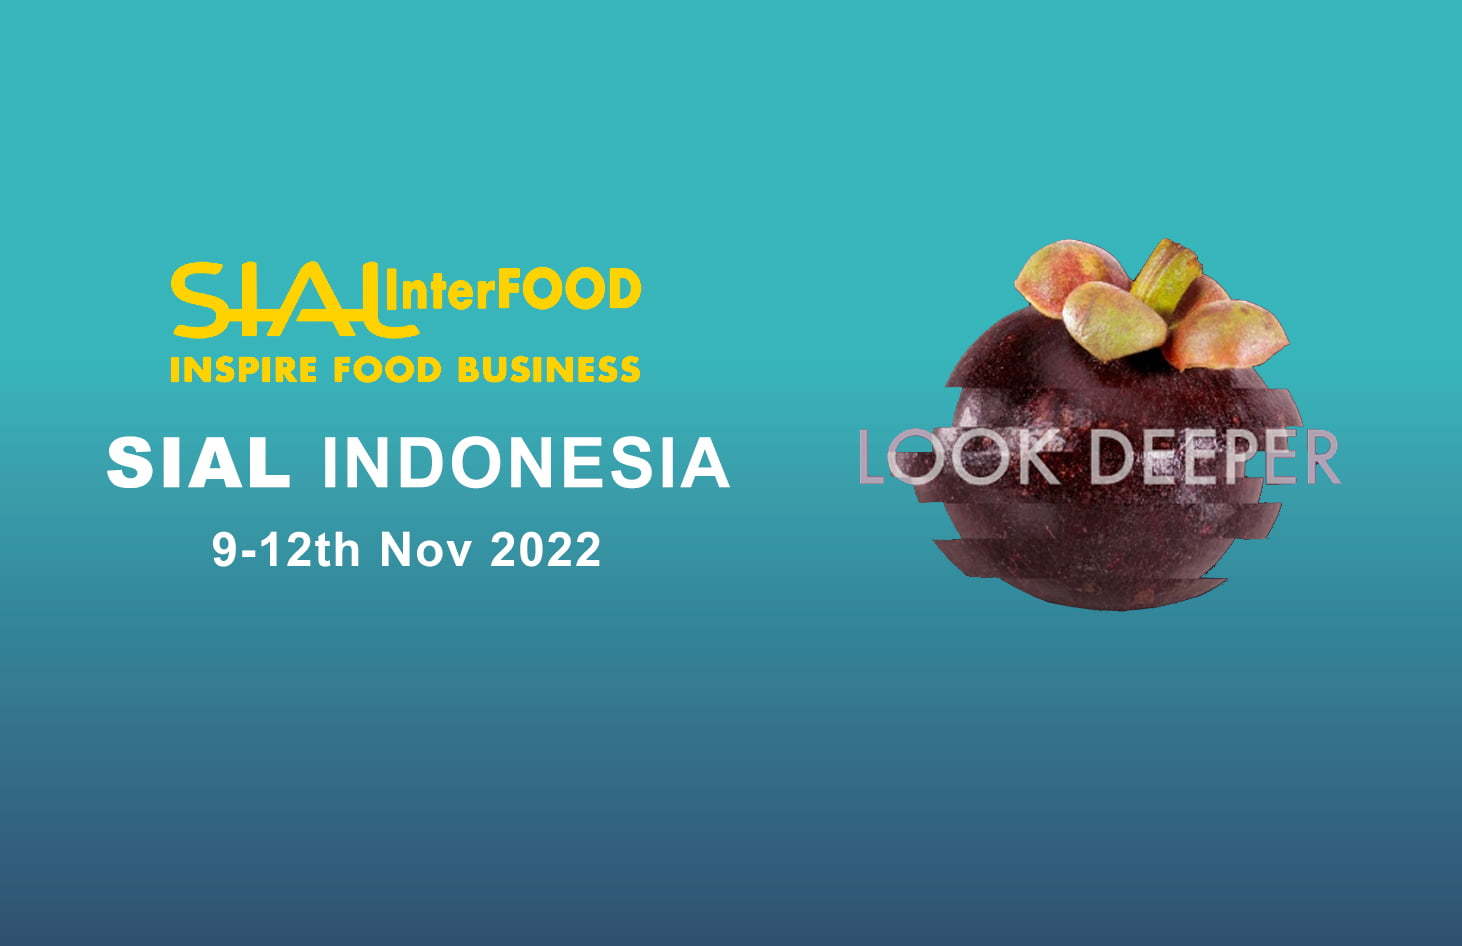 展会邀请函-SIAL 国际食品展 2022印度尼西亚